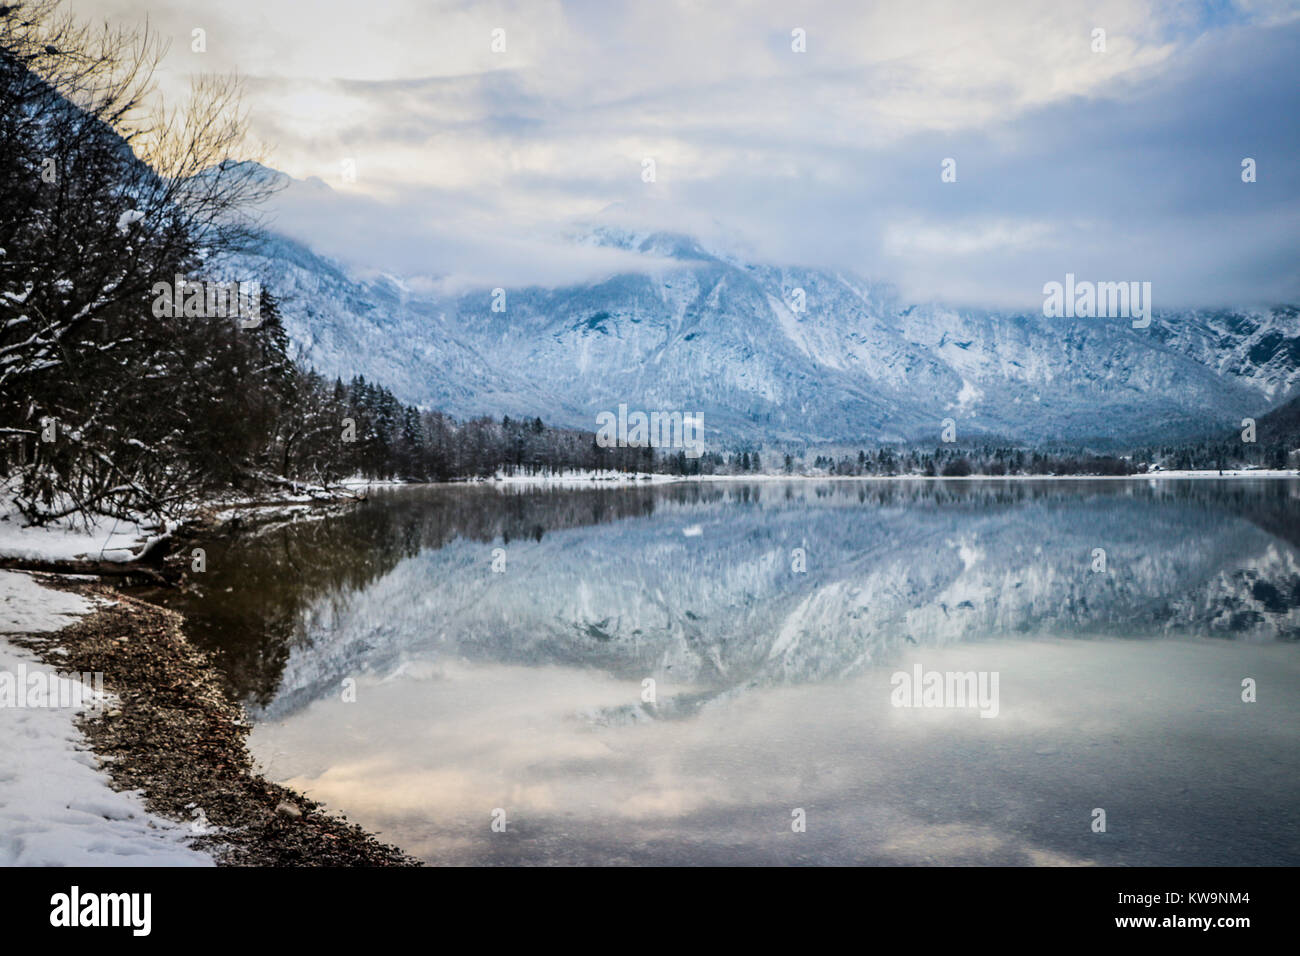 Die herrliche Ruhe des Sees Bohinj (Slowenien), in diesem wunderbaren Bild aufgenommen, perfekt die Vorderseite einer Weihnachtskarte oder Postkarte zu schmücken. Stockfoto